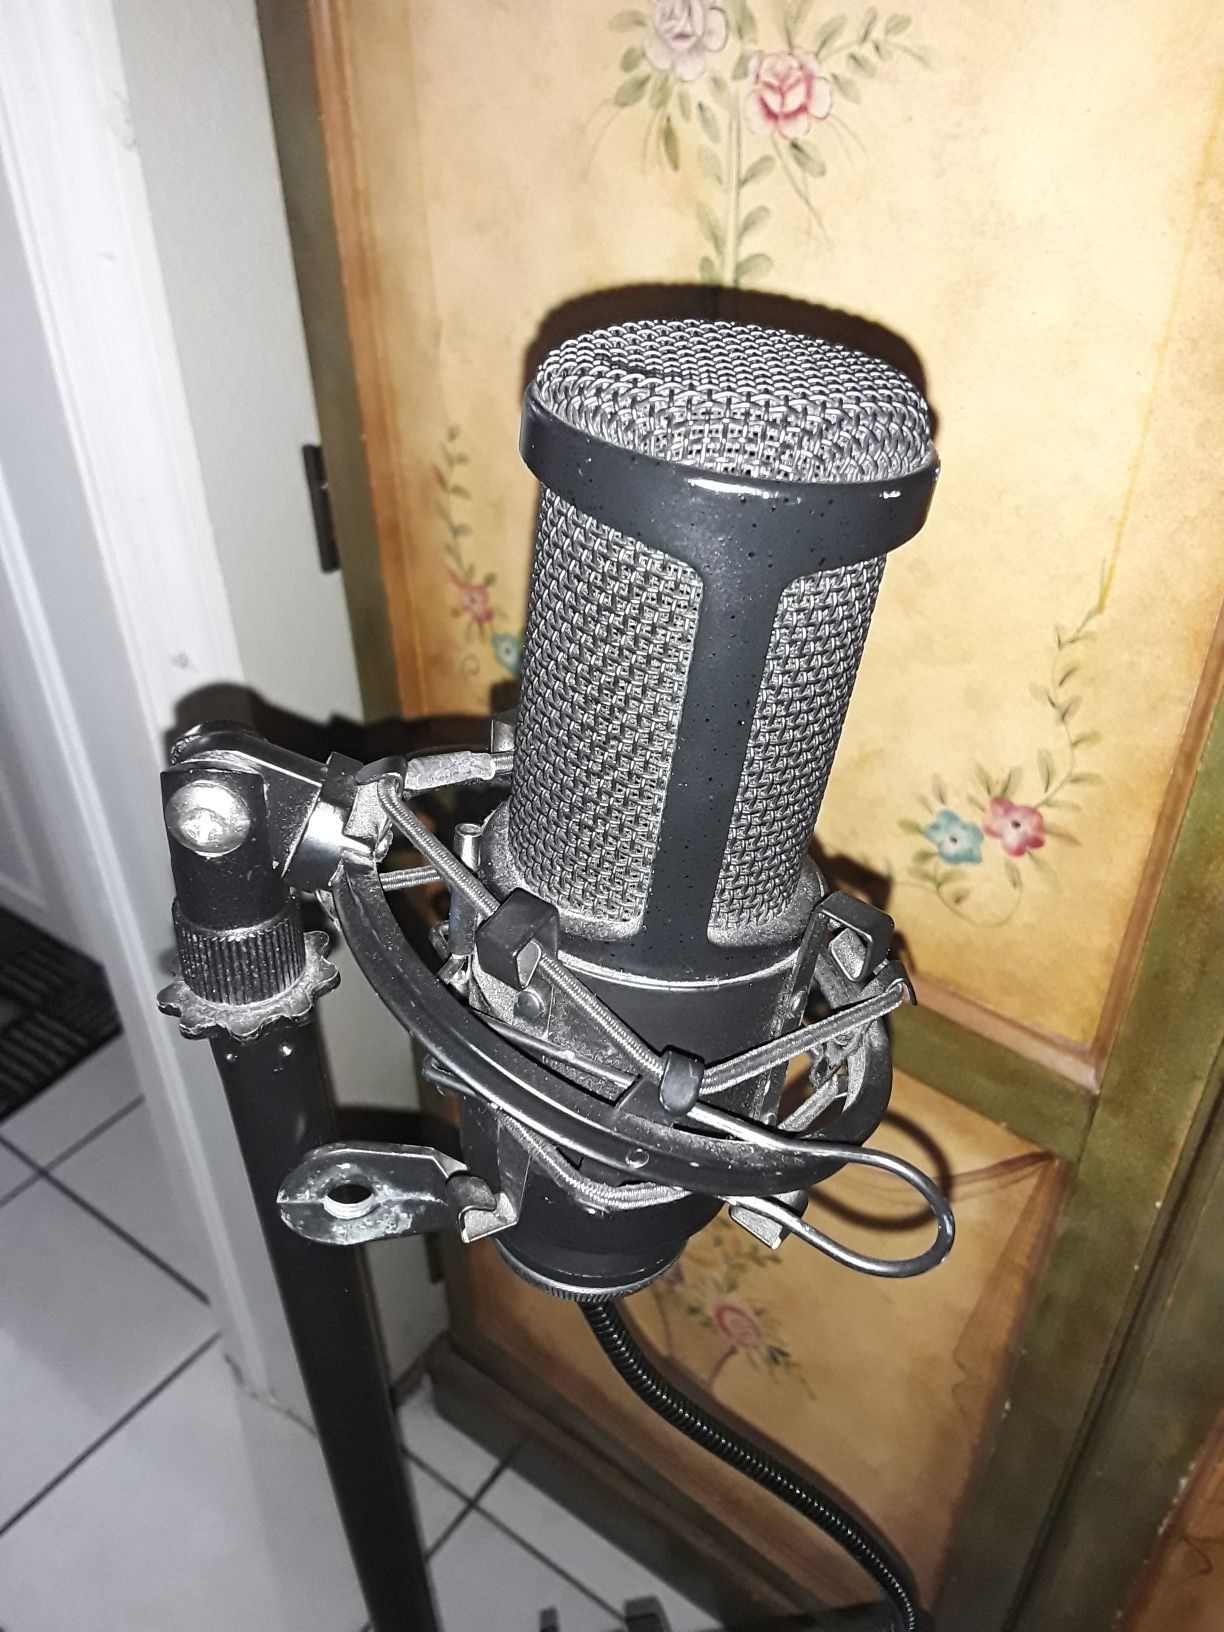 Audio Technica Studio Microphone